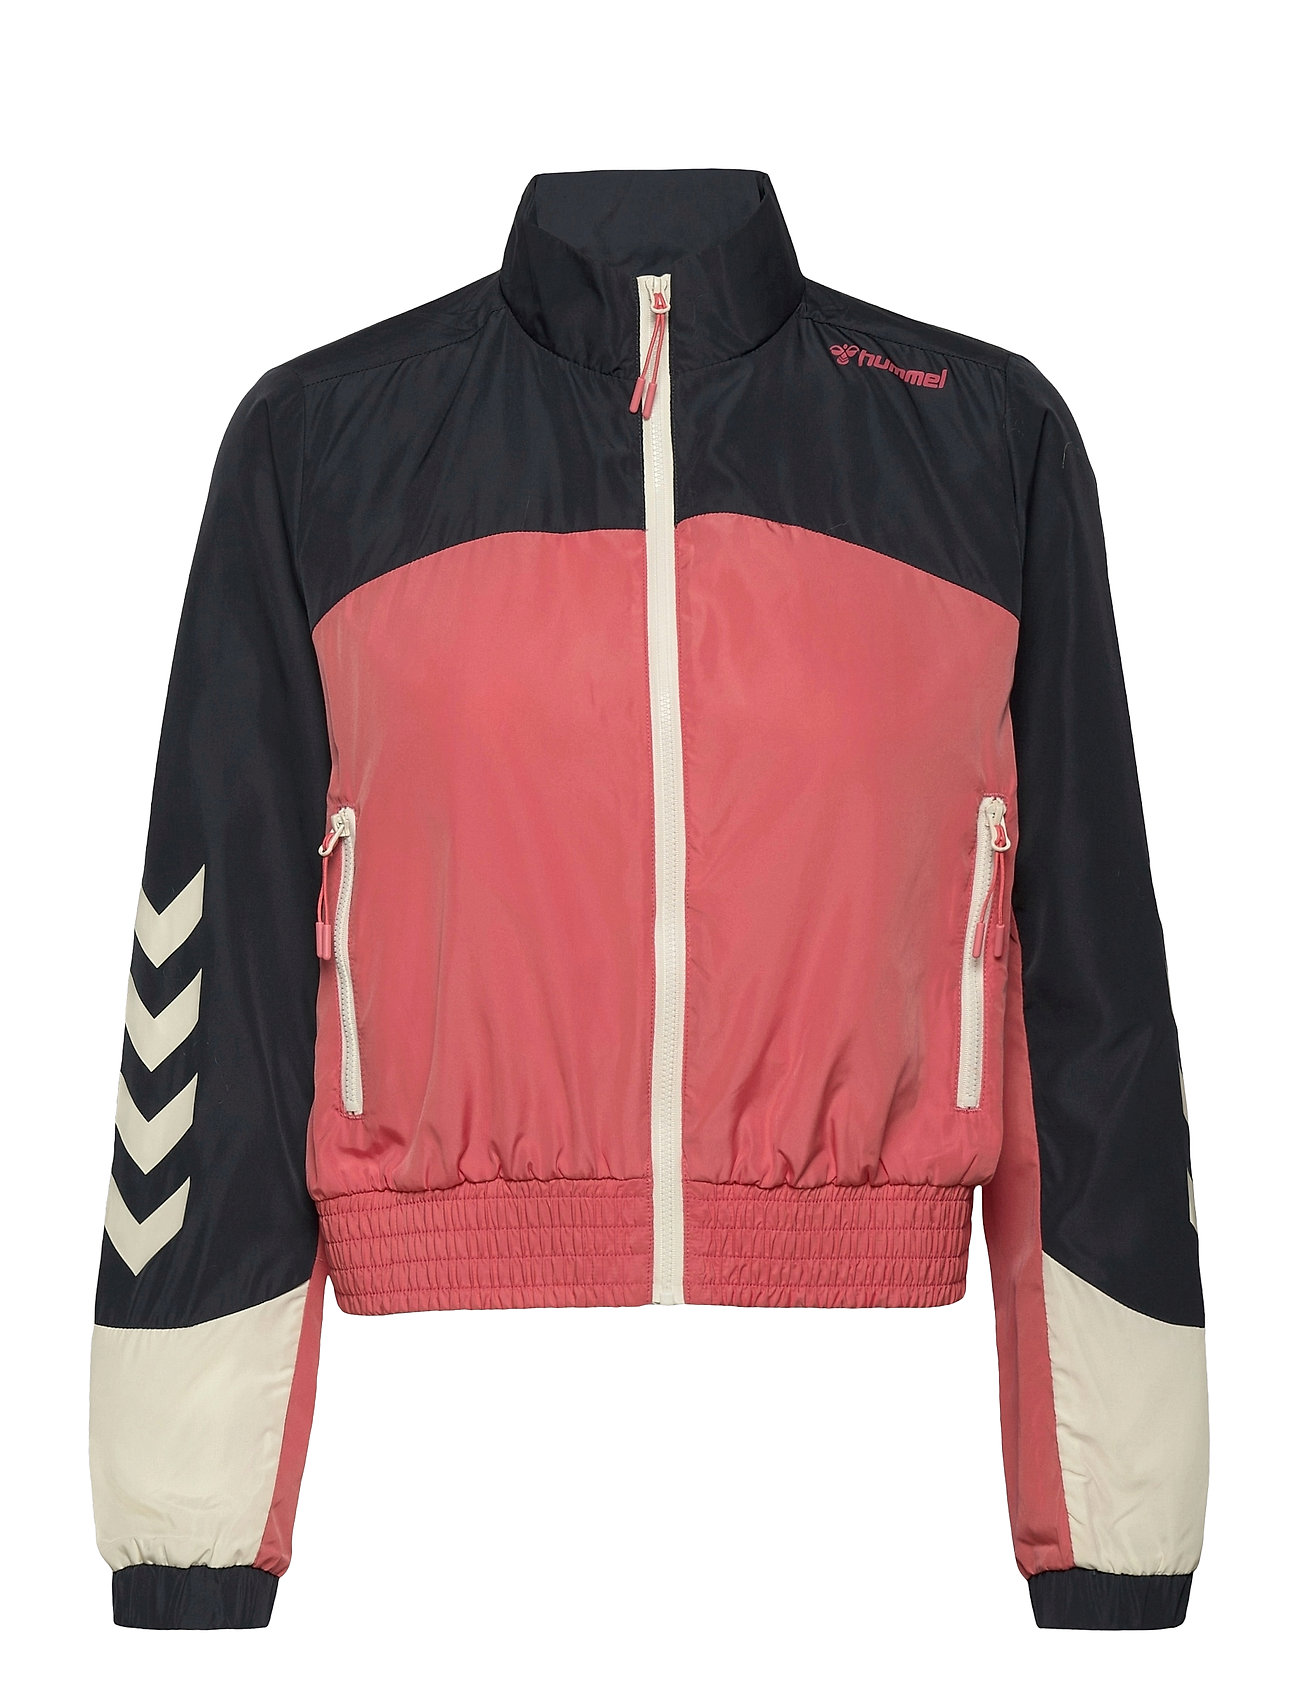 overvåge Visne sagging Hummel jakker – Hmldelana Loose Zip Jacket Outerwear Sport Jackets Blå  Hummel til dame i Blå - Pashion.dk